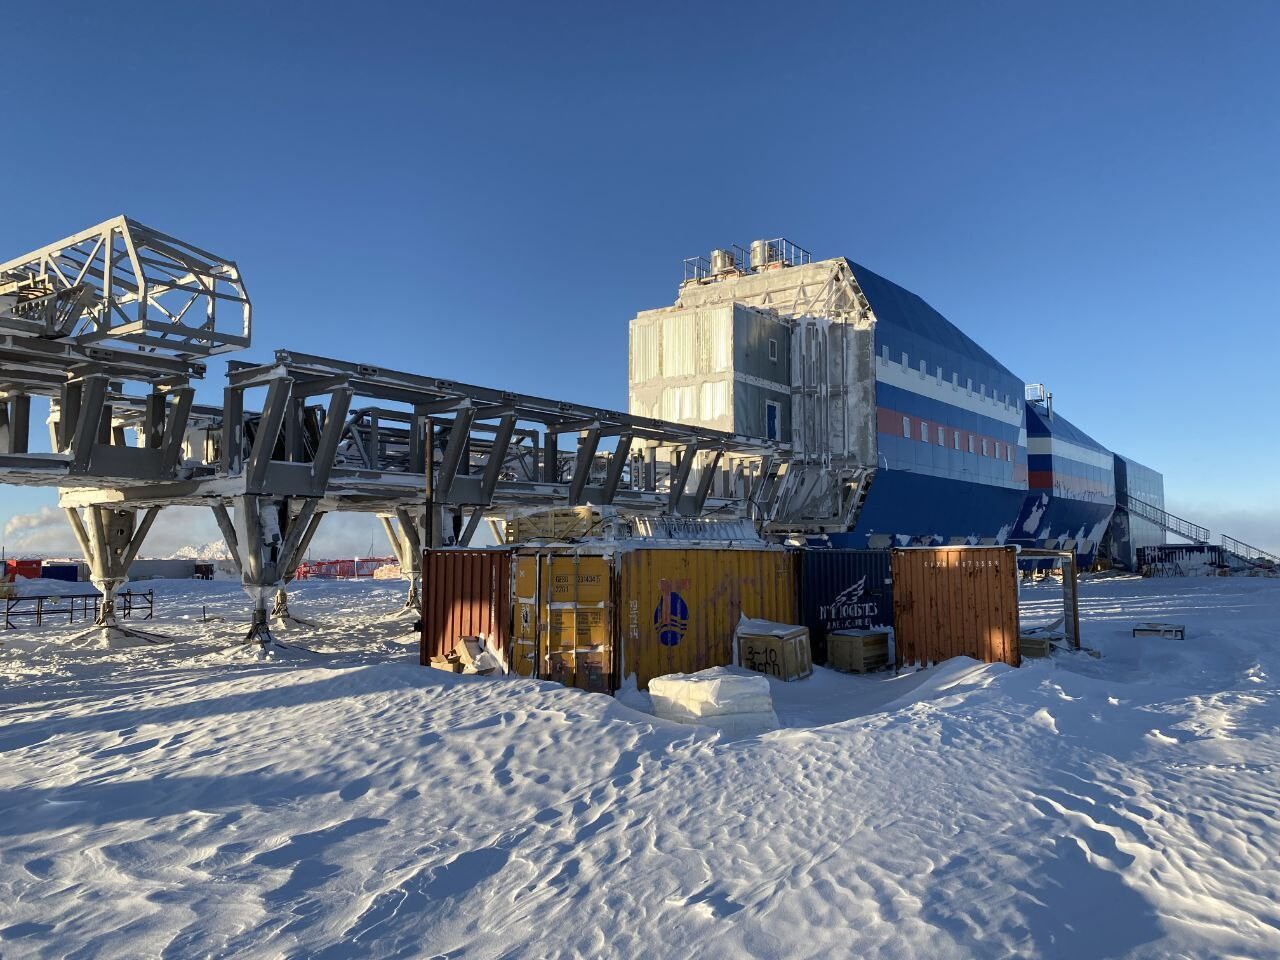 Россия готова в январе начать опытную эксплуатацию строящейся станции "Восток" в Антарктиде